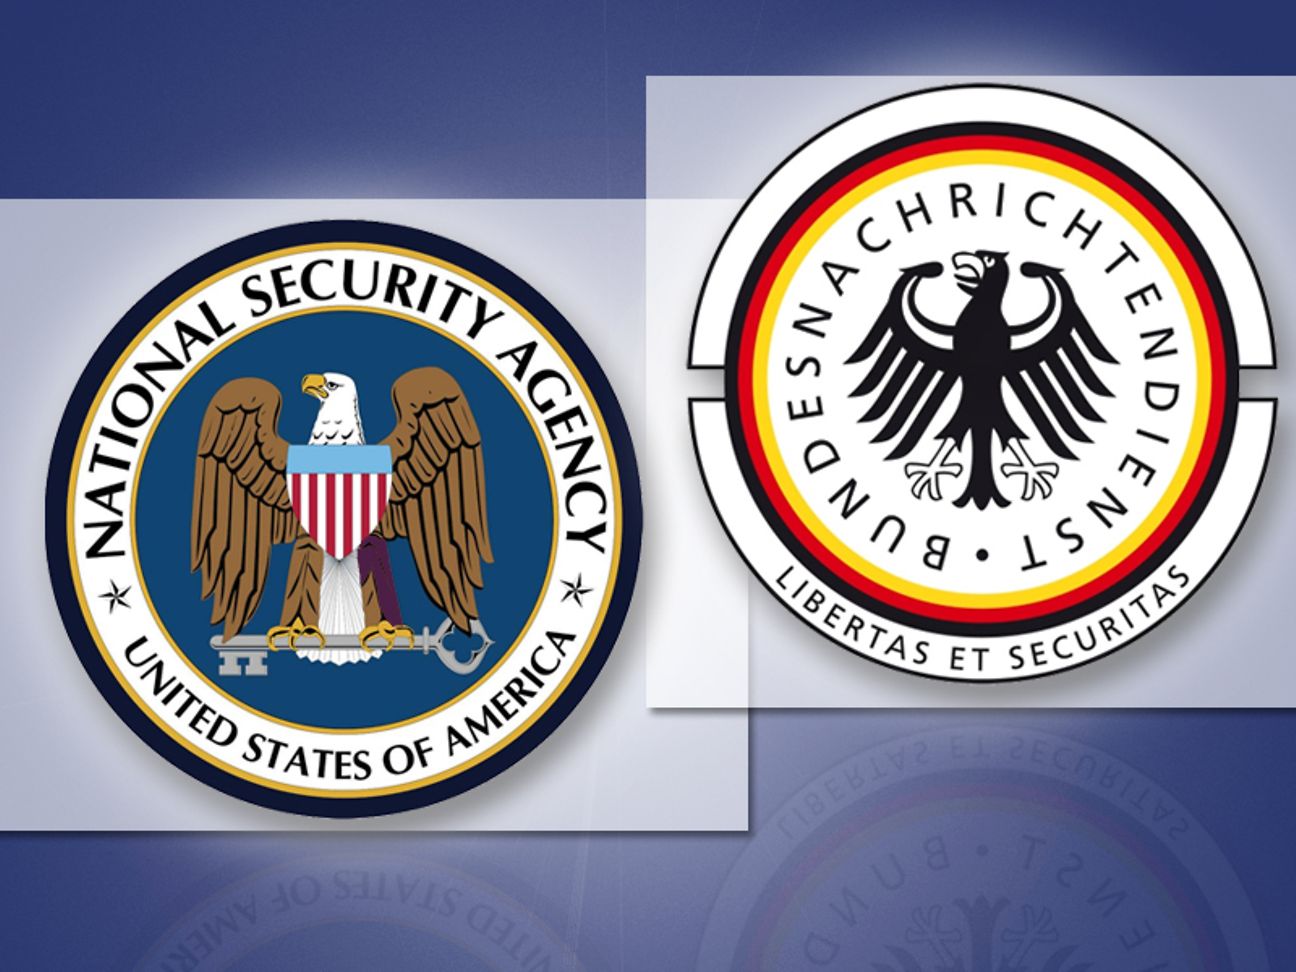 D-Geheimdienste-Bundestag-Kriminalität: Geheim-Handy von NSA-Ausschusschef  womöglich gehackt - WELT